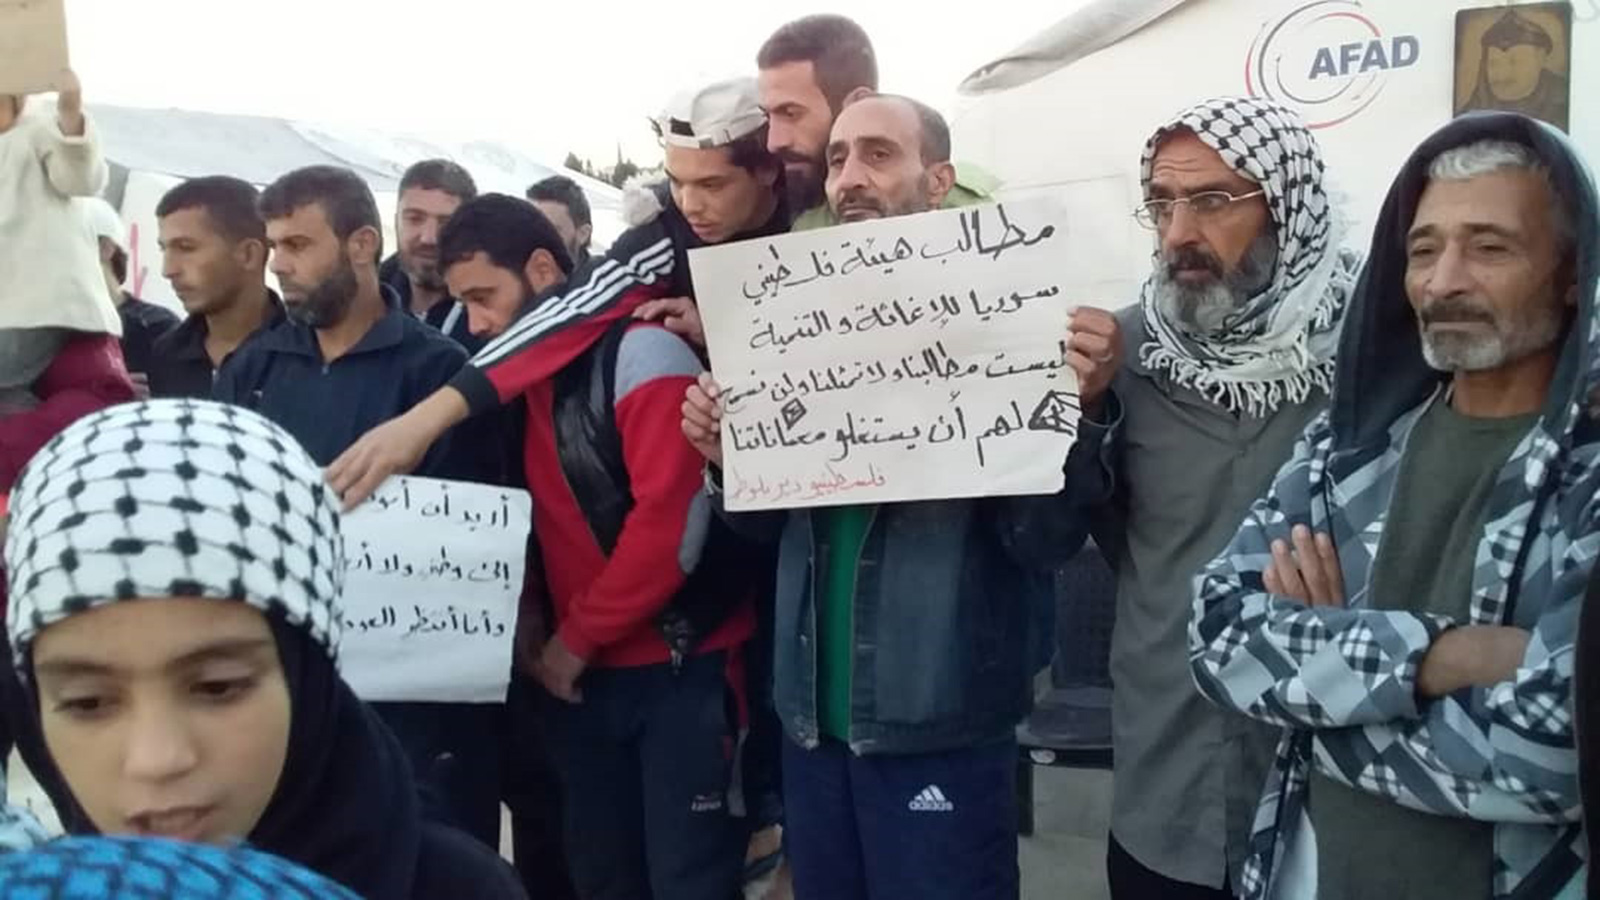 الفلسطينيون في دير بلوط يطالبون بحقوقهم في العودة وحياة كريمة (الجزيرة)